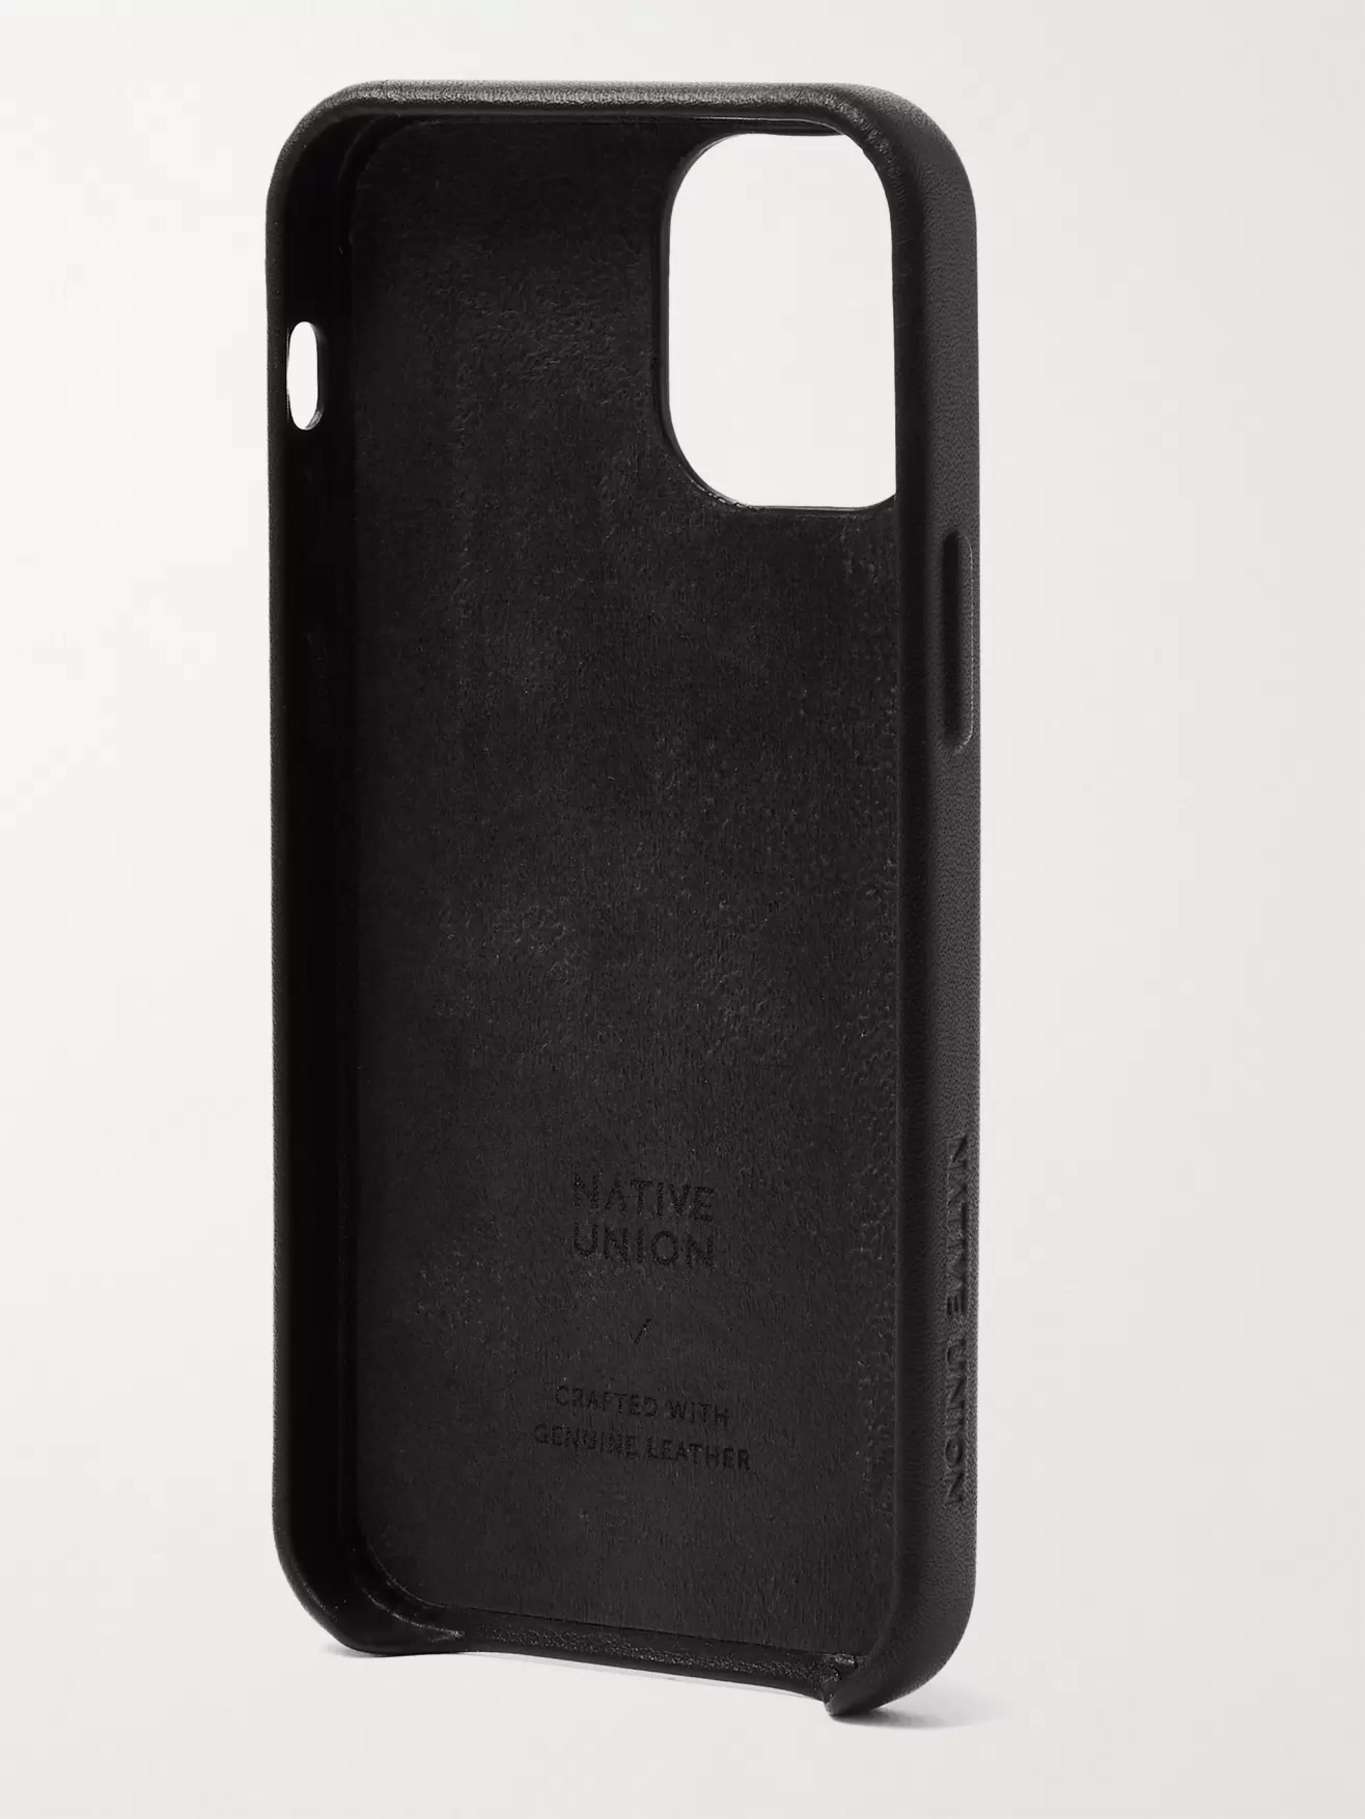 NATIVE UNION Clic Classic Leather iPhone 12 Mini Case for Men | MR PORTER